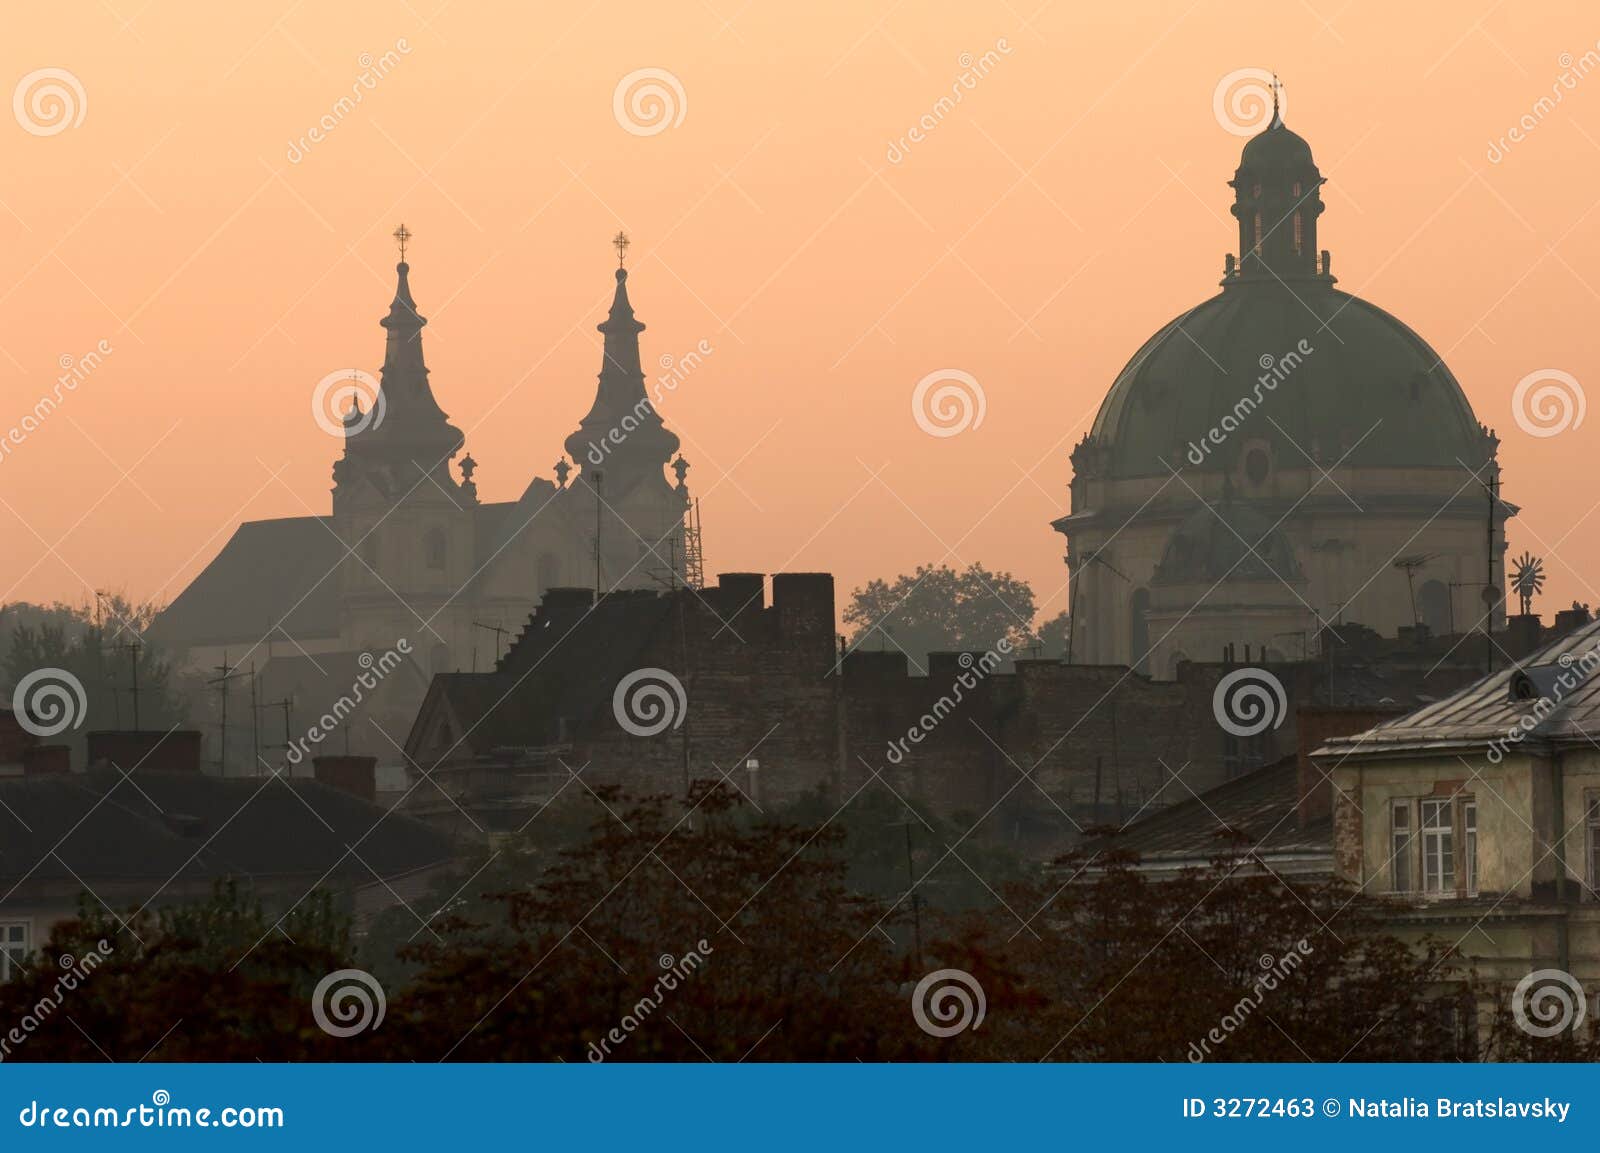 lviv at sunrise